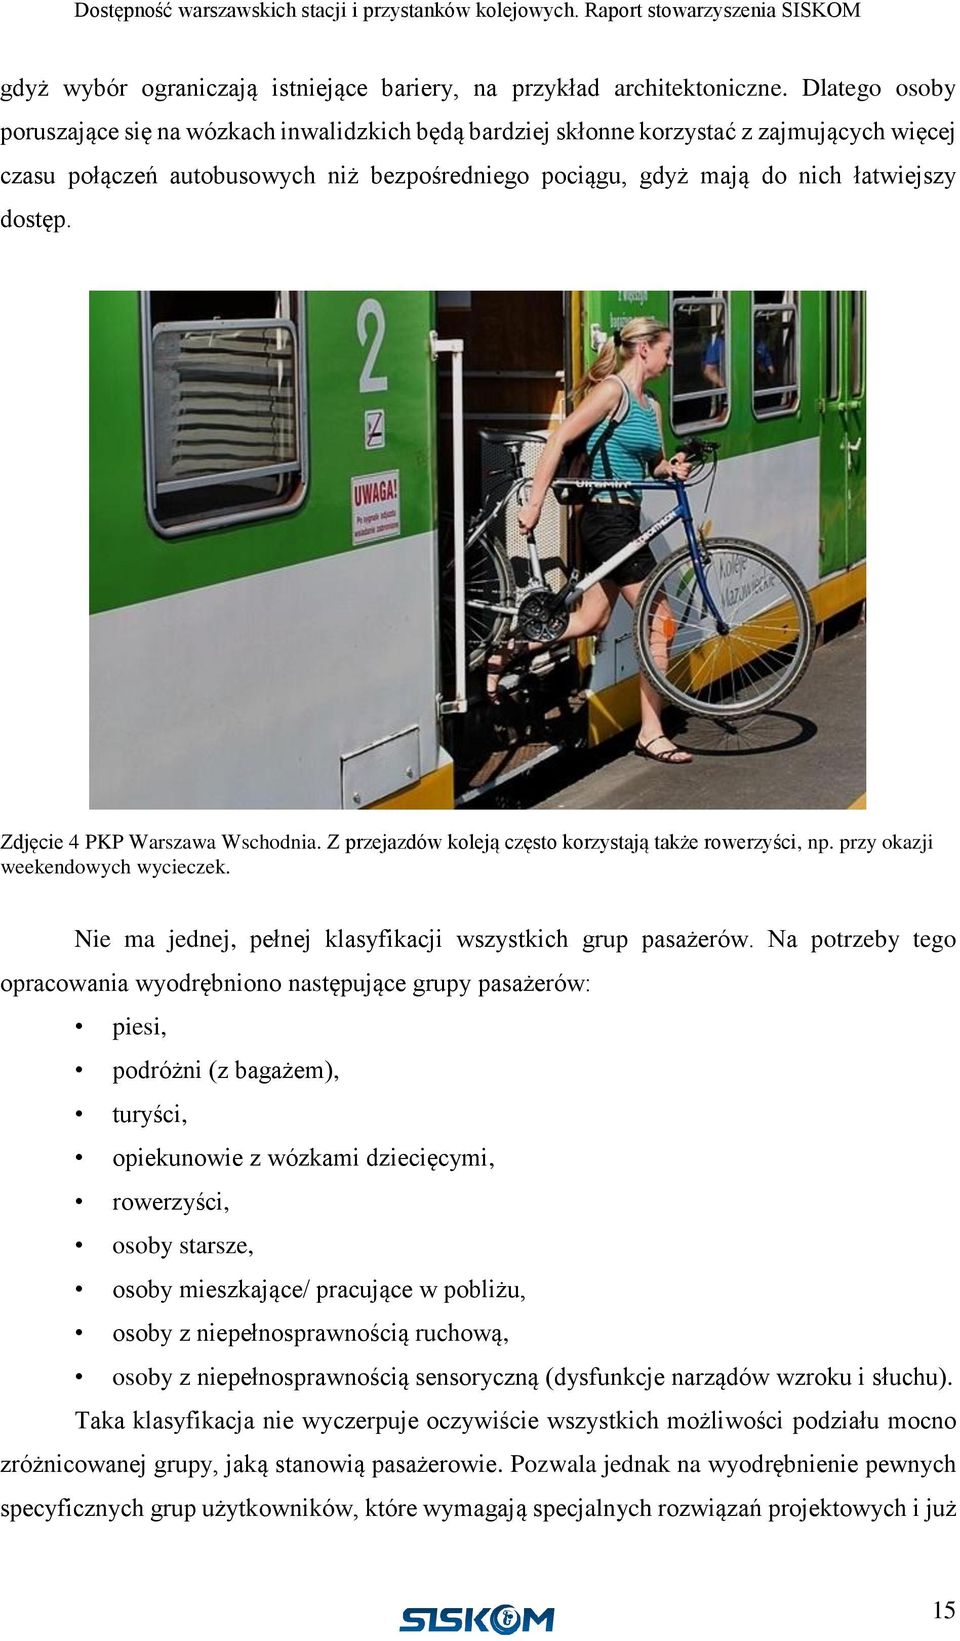 Zdjęcie 4 PKP Warszawa Wschodnia. Z przejazdów koleją często korzystają także rowerzyści, np. przy okazji weekendowych wycieczek. Nie ma jednej, pełnej klasyfikacji wszystkich grup pasażerów.